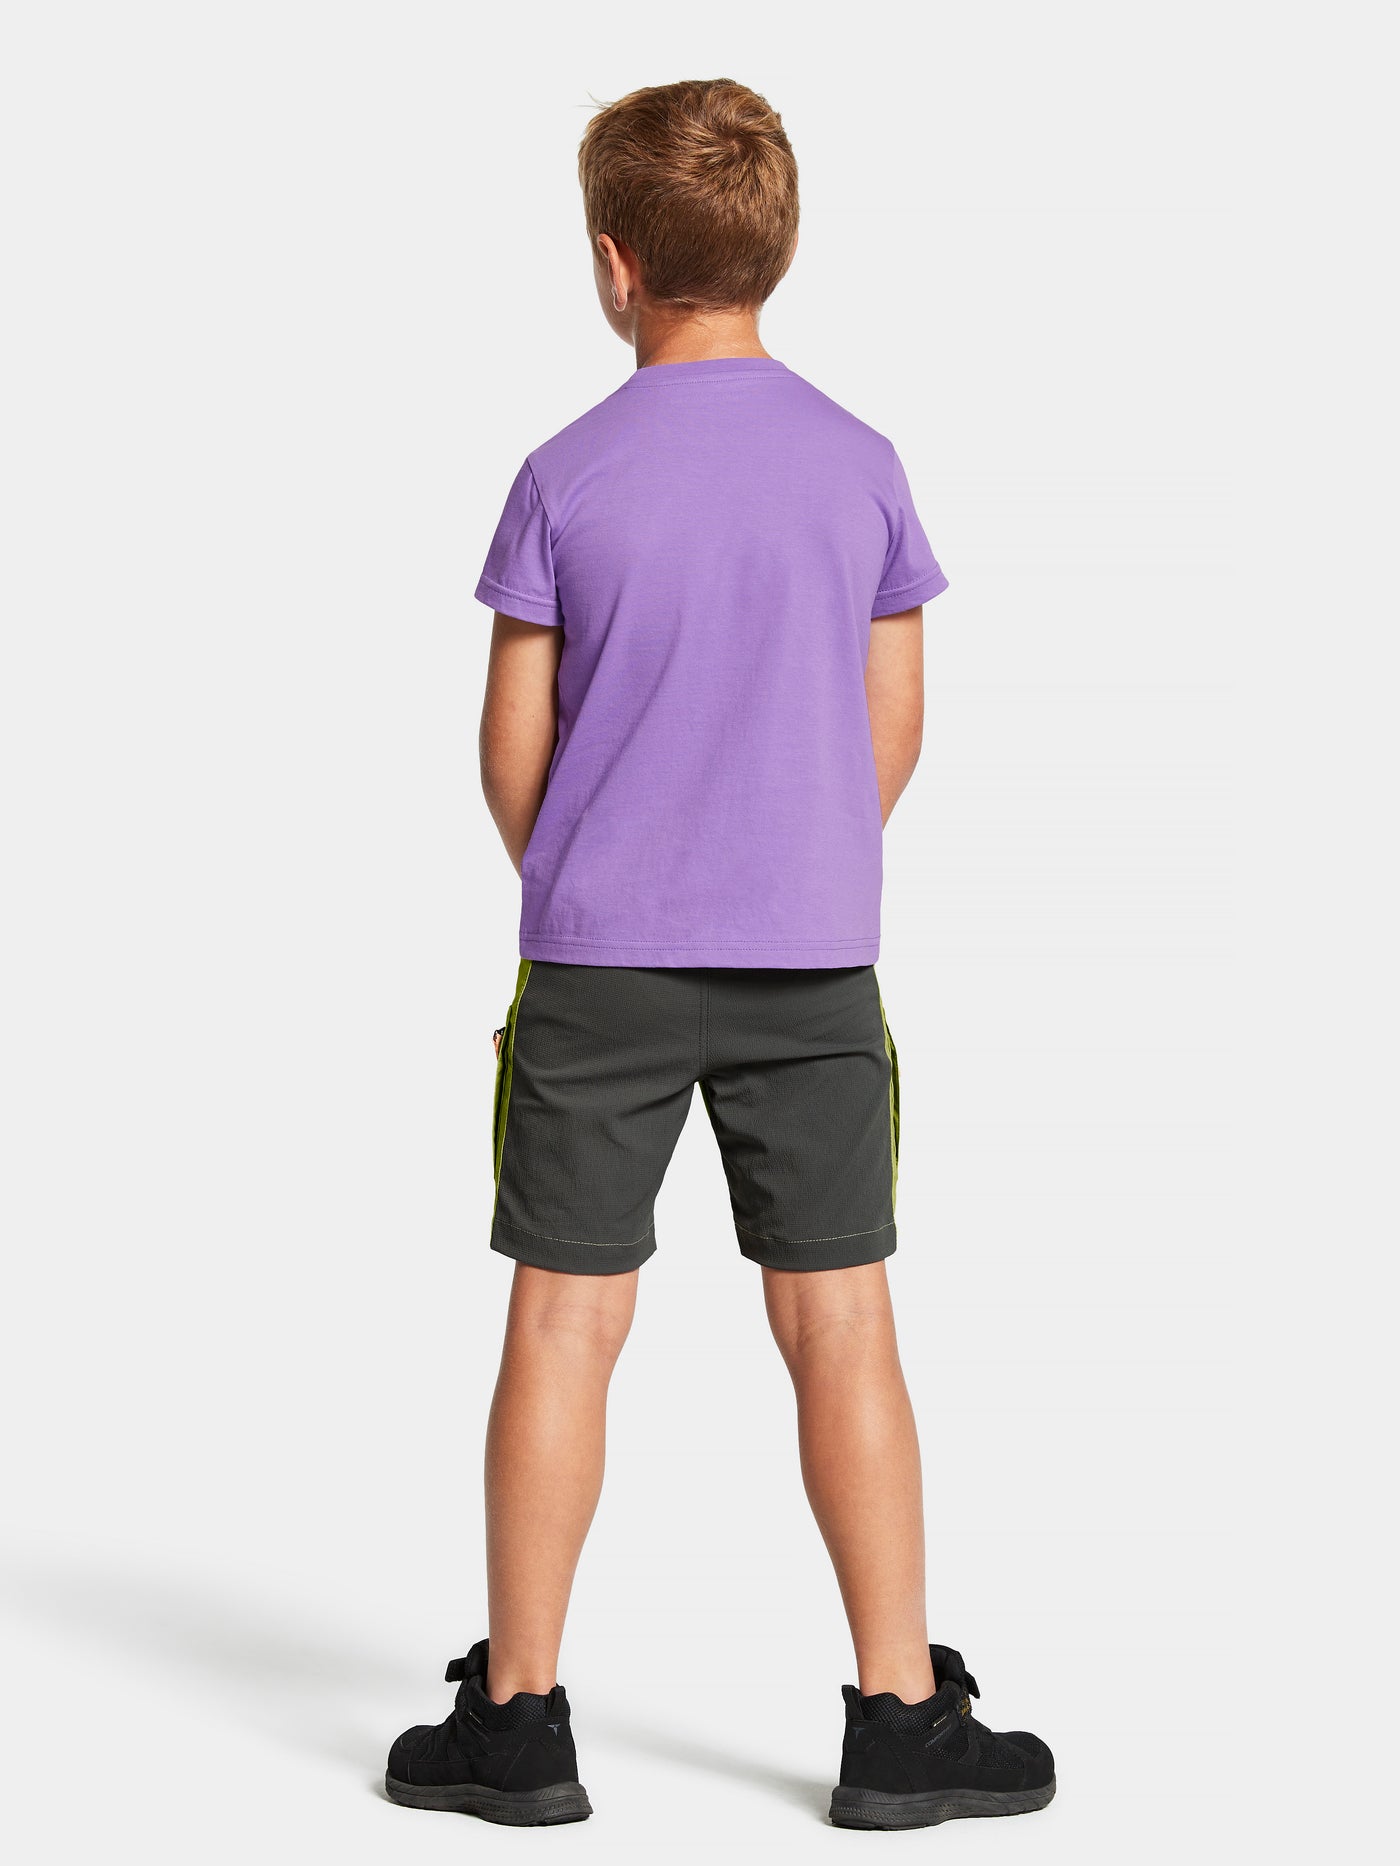 Didriksonsin lasten ja nuorten Mynta logo t-paita liilassa sävyssä lapsen päällä takaa kuvattuna